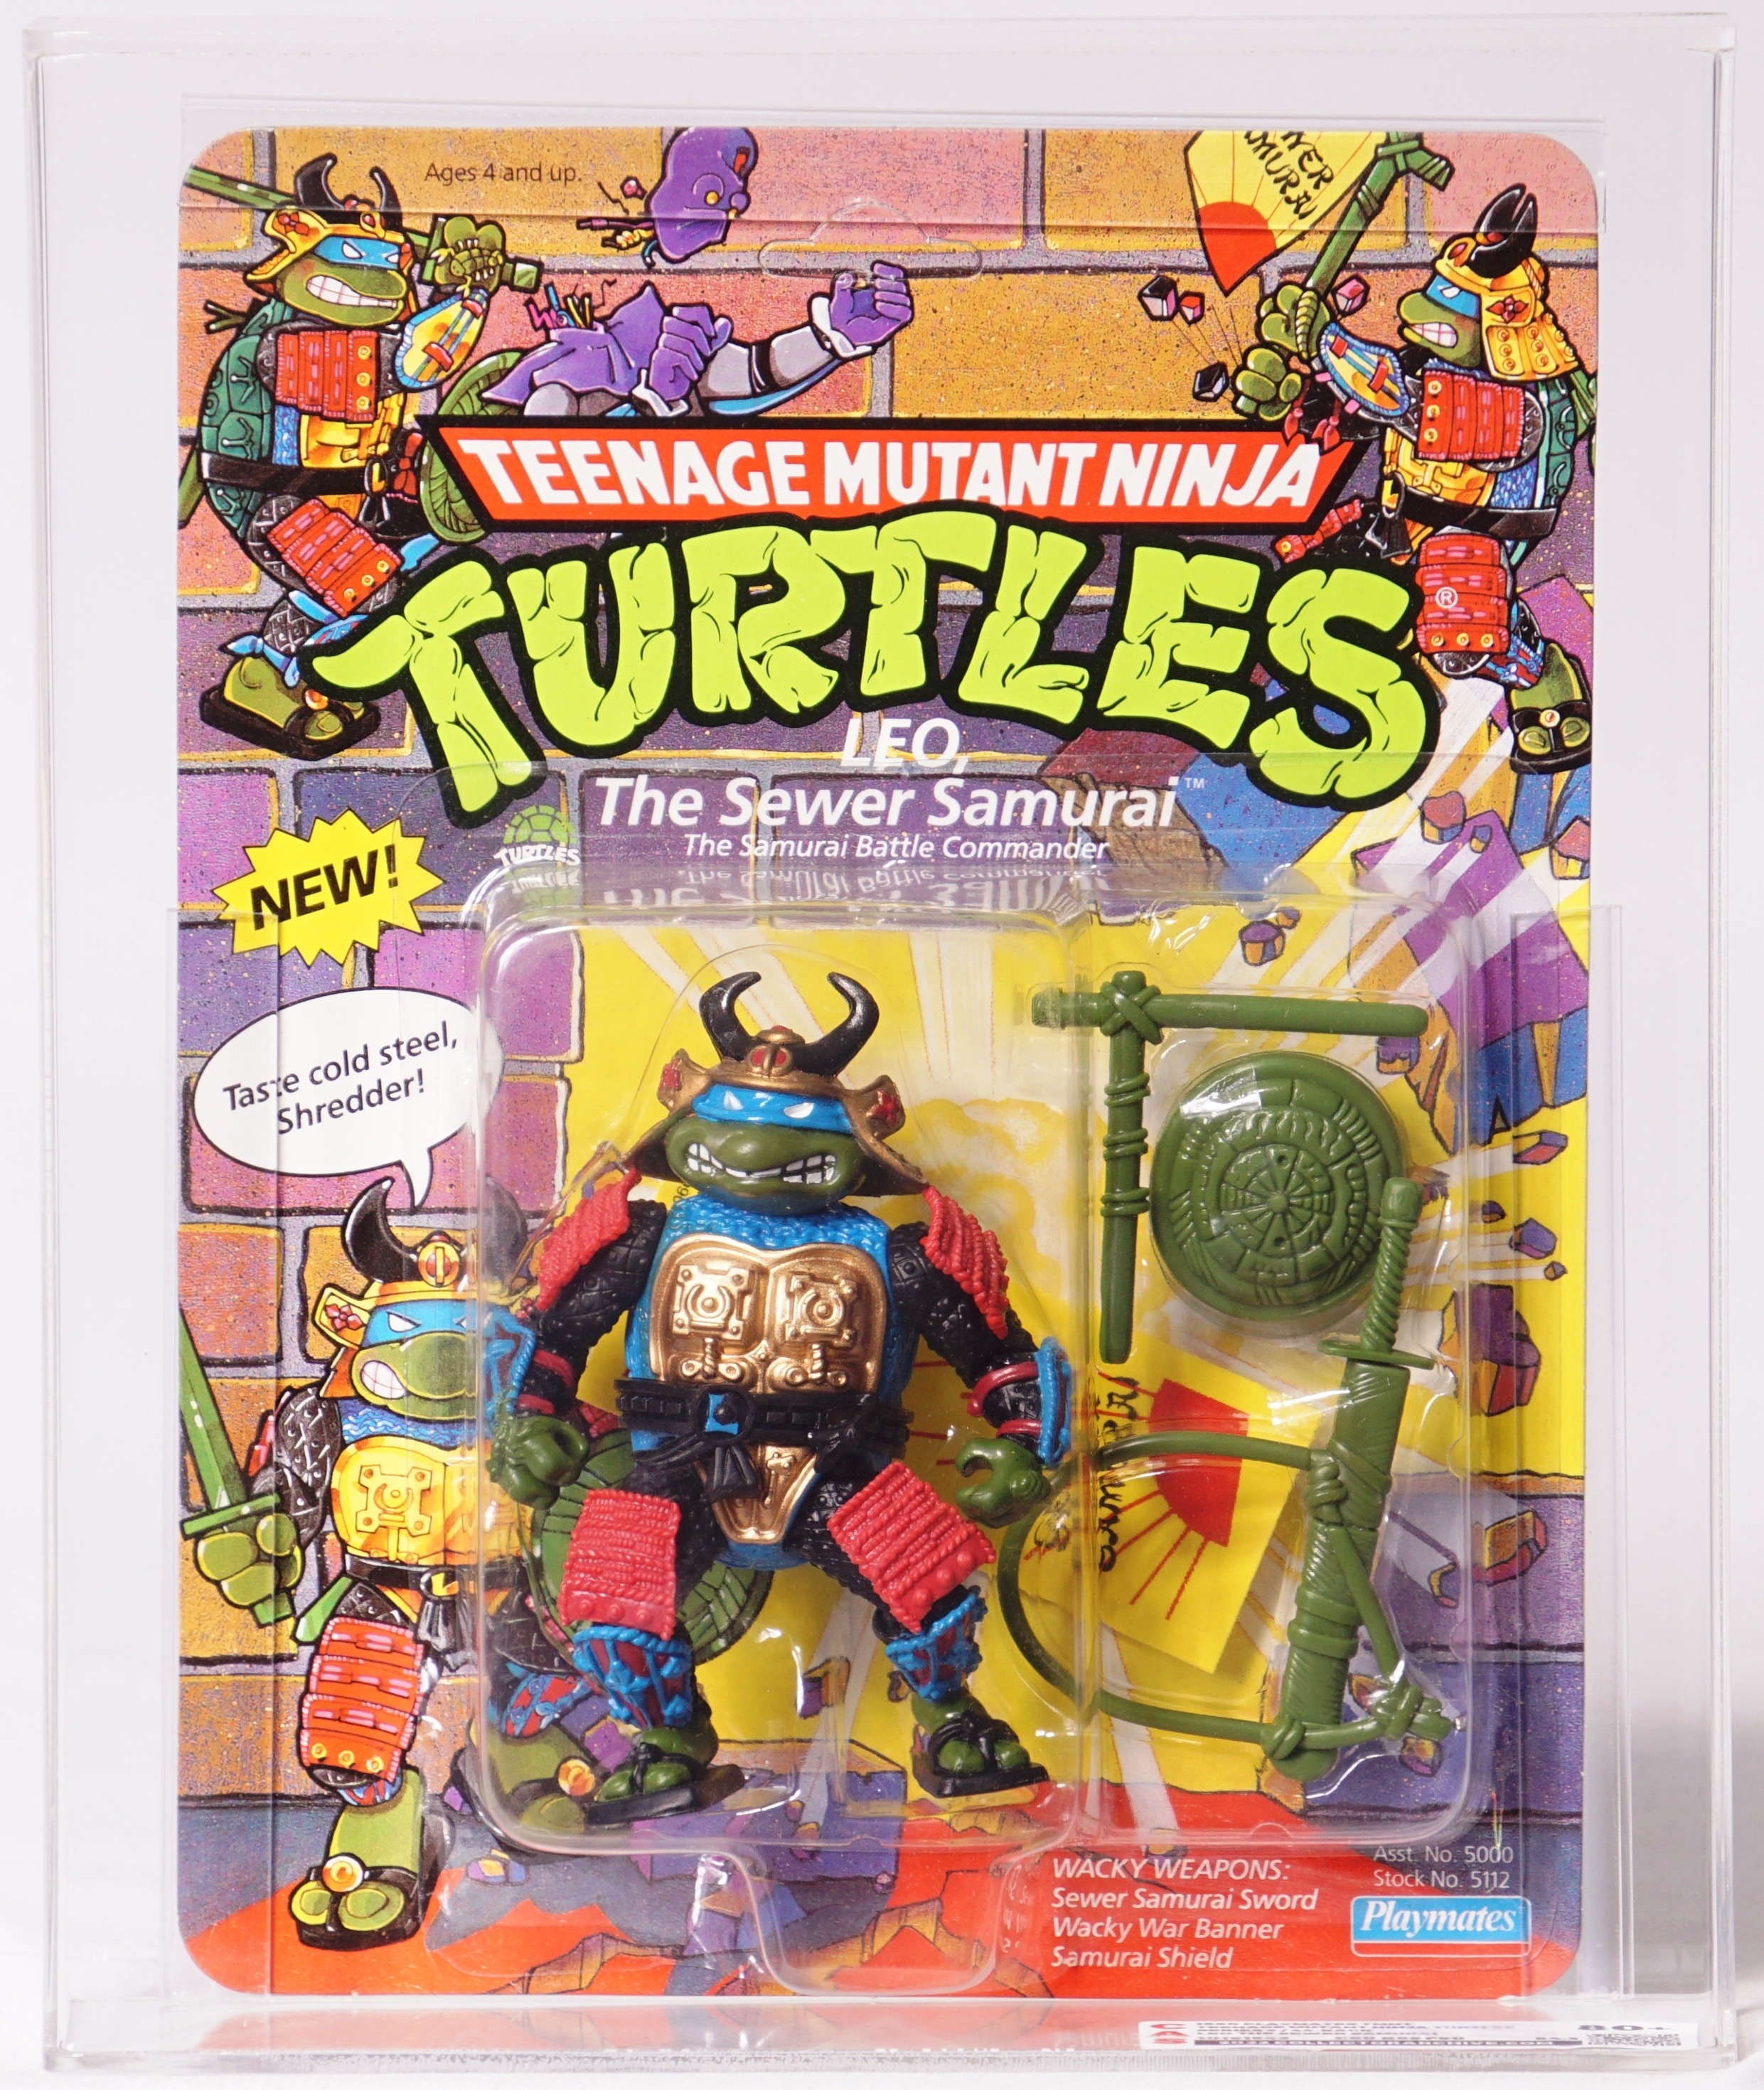 Playmates 1992 – Samurai Scooter – Teenage Mutant Ninja Turtles